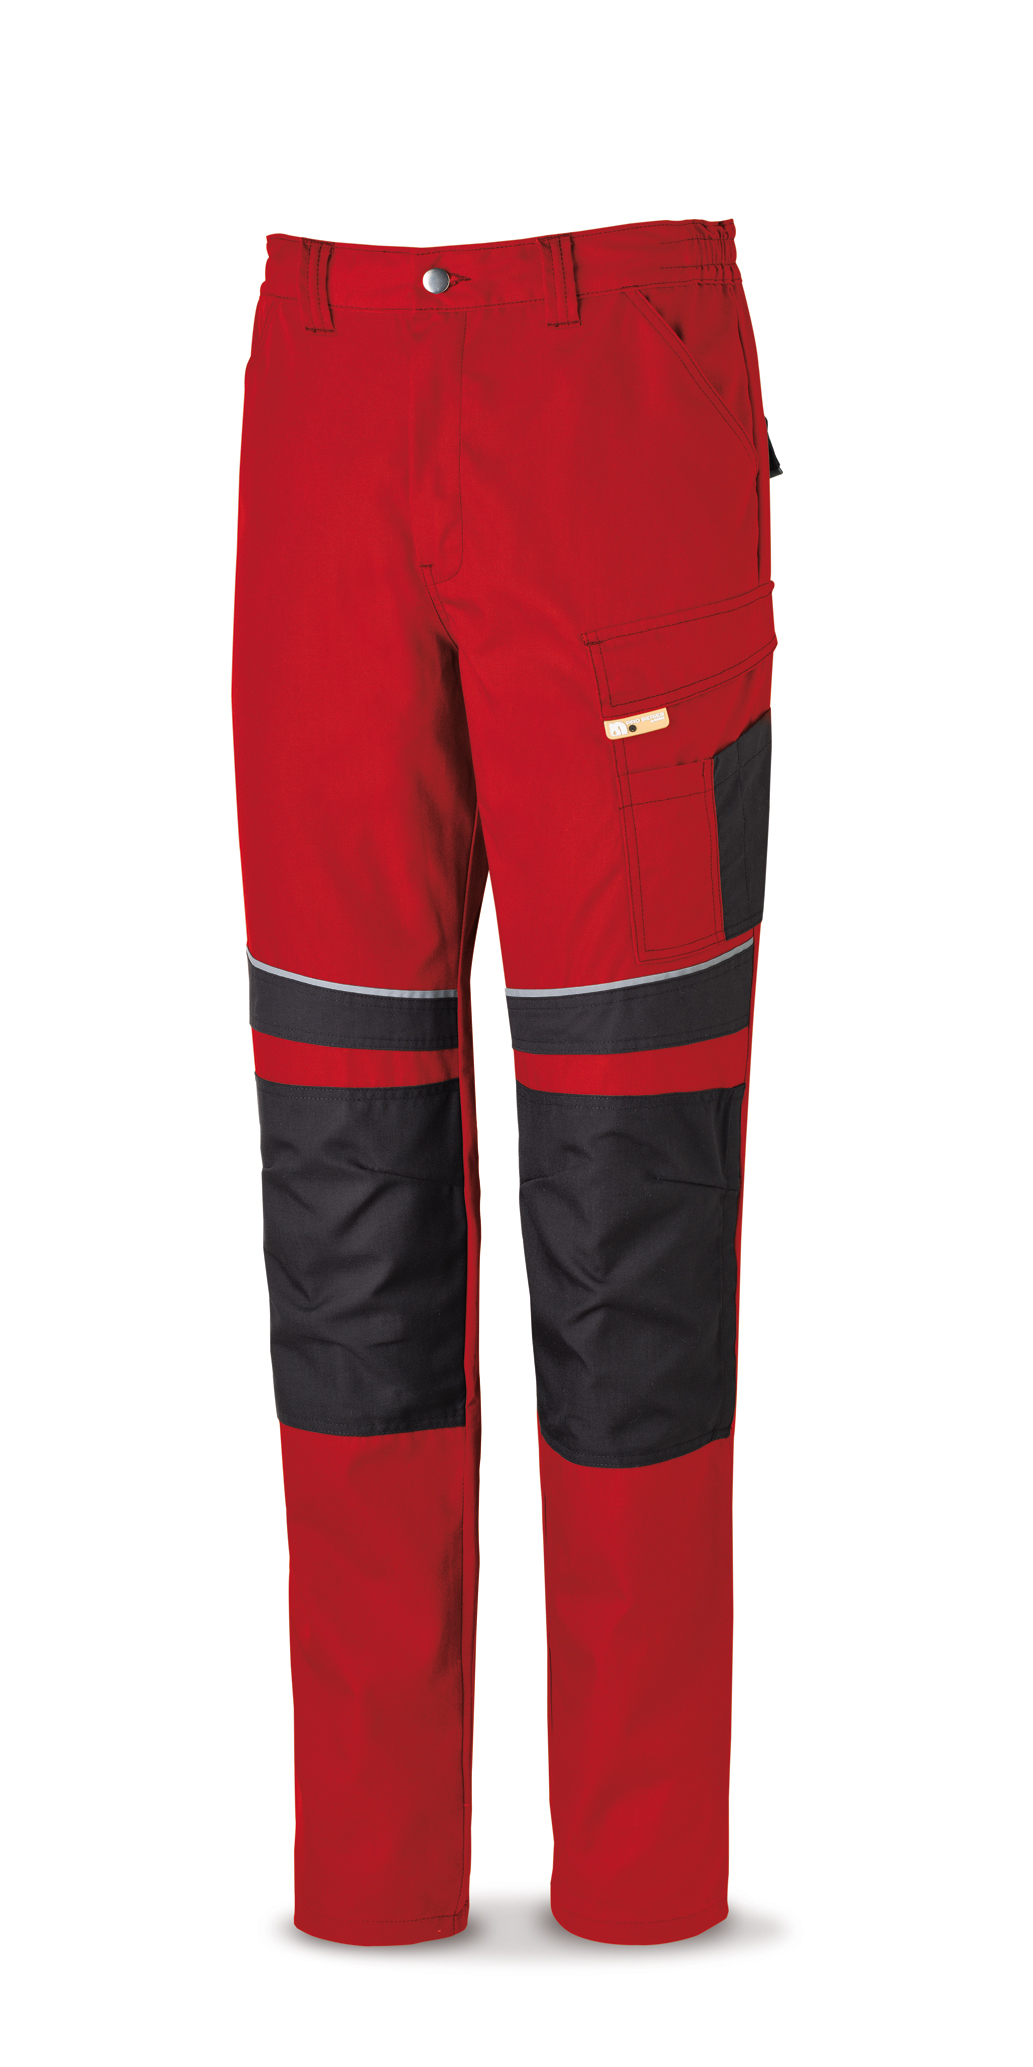 588-PRN Vetements de travail laboral Pro Series Pantalon toile tergal 245 g. Coloris rouge/noir